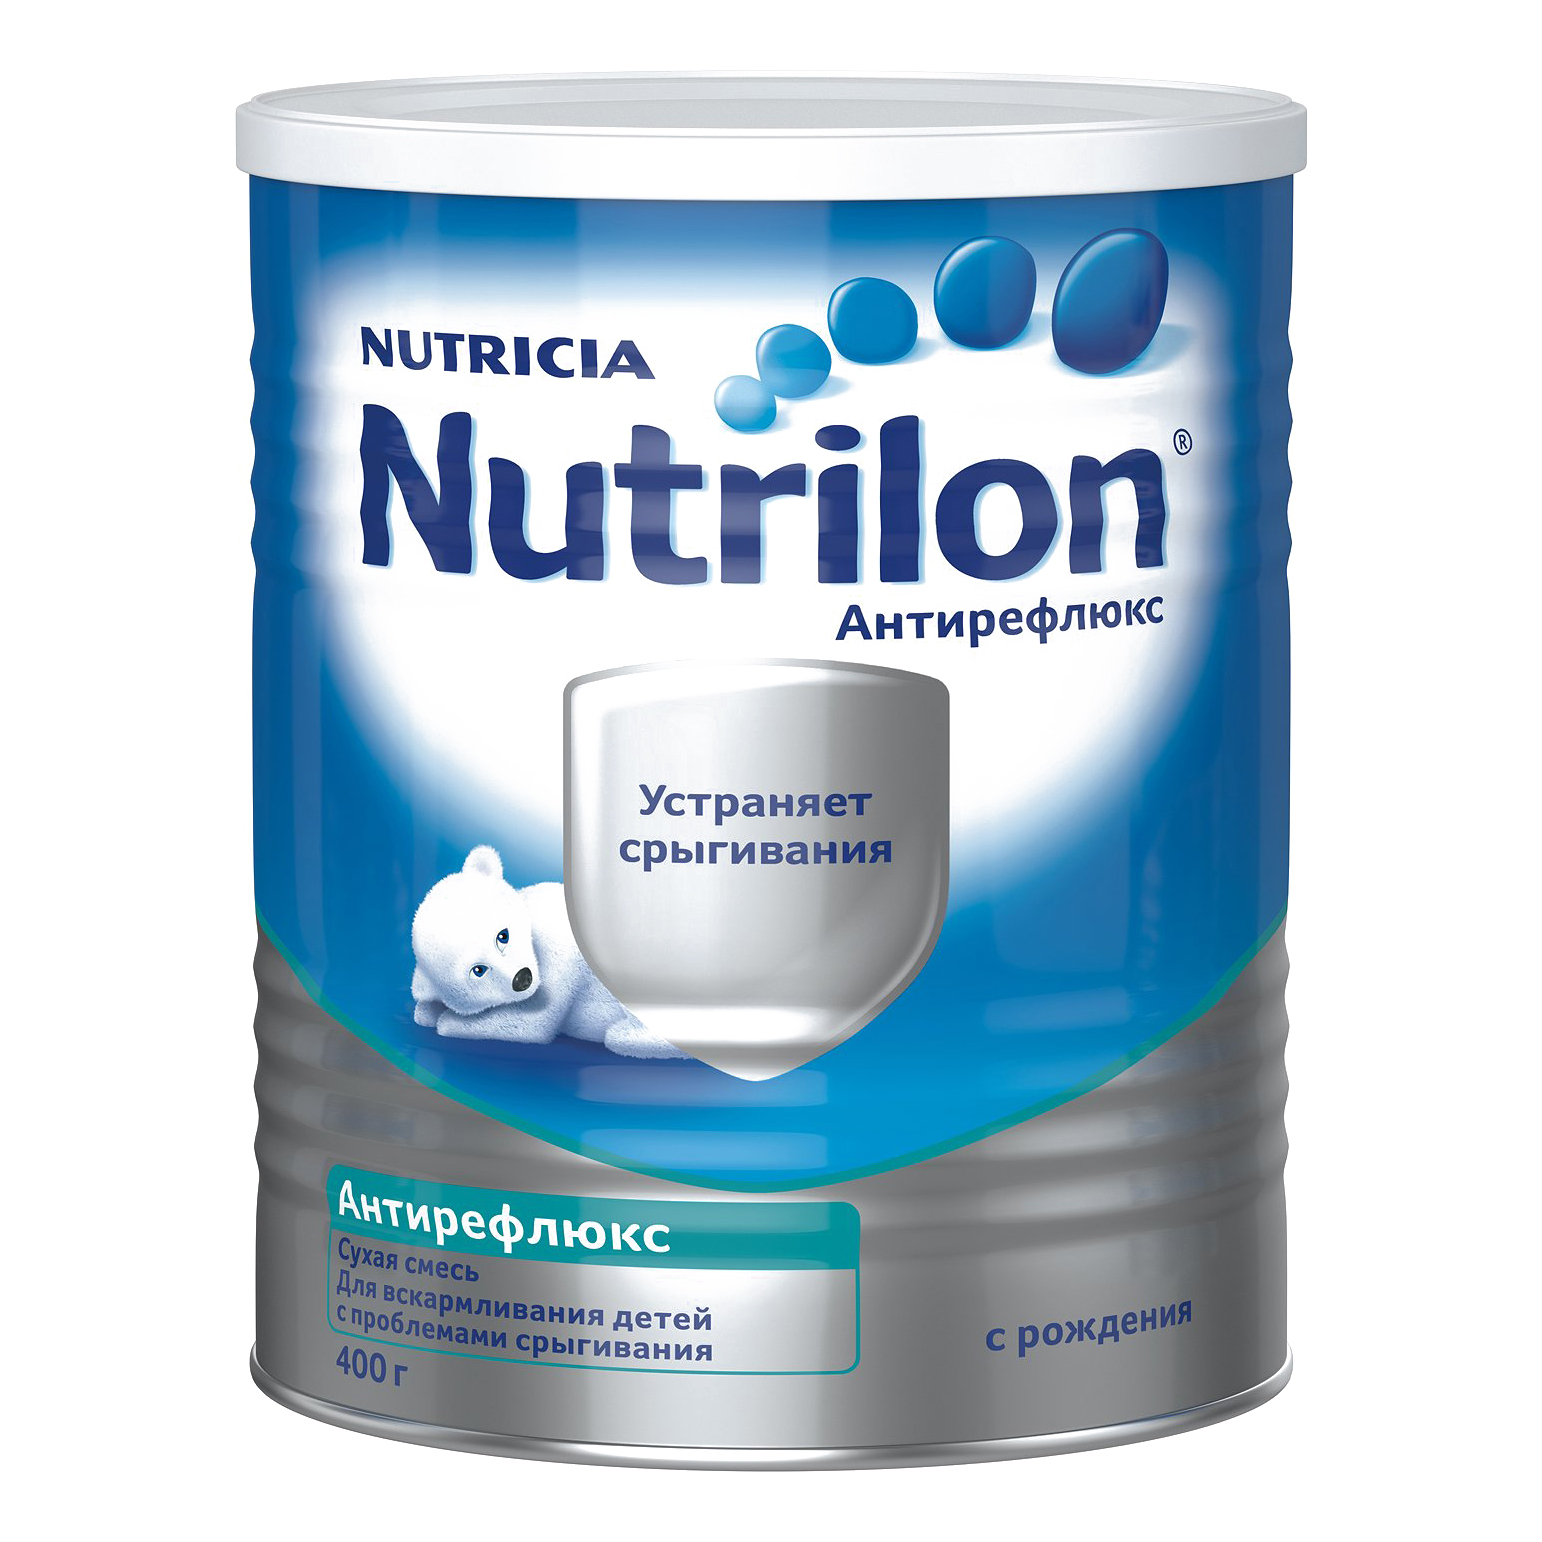 Nutricia Nutrilon Антирефлюкс детская молочная смесь 400 гр. 748520 